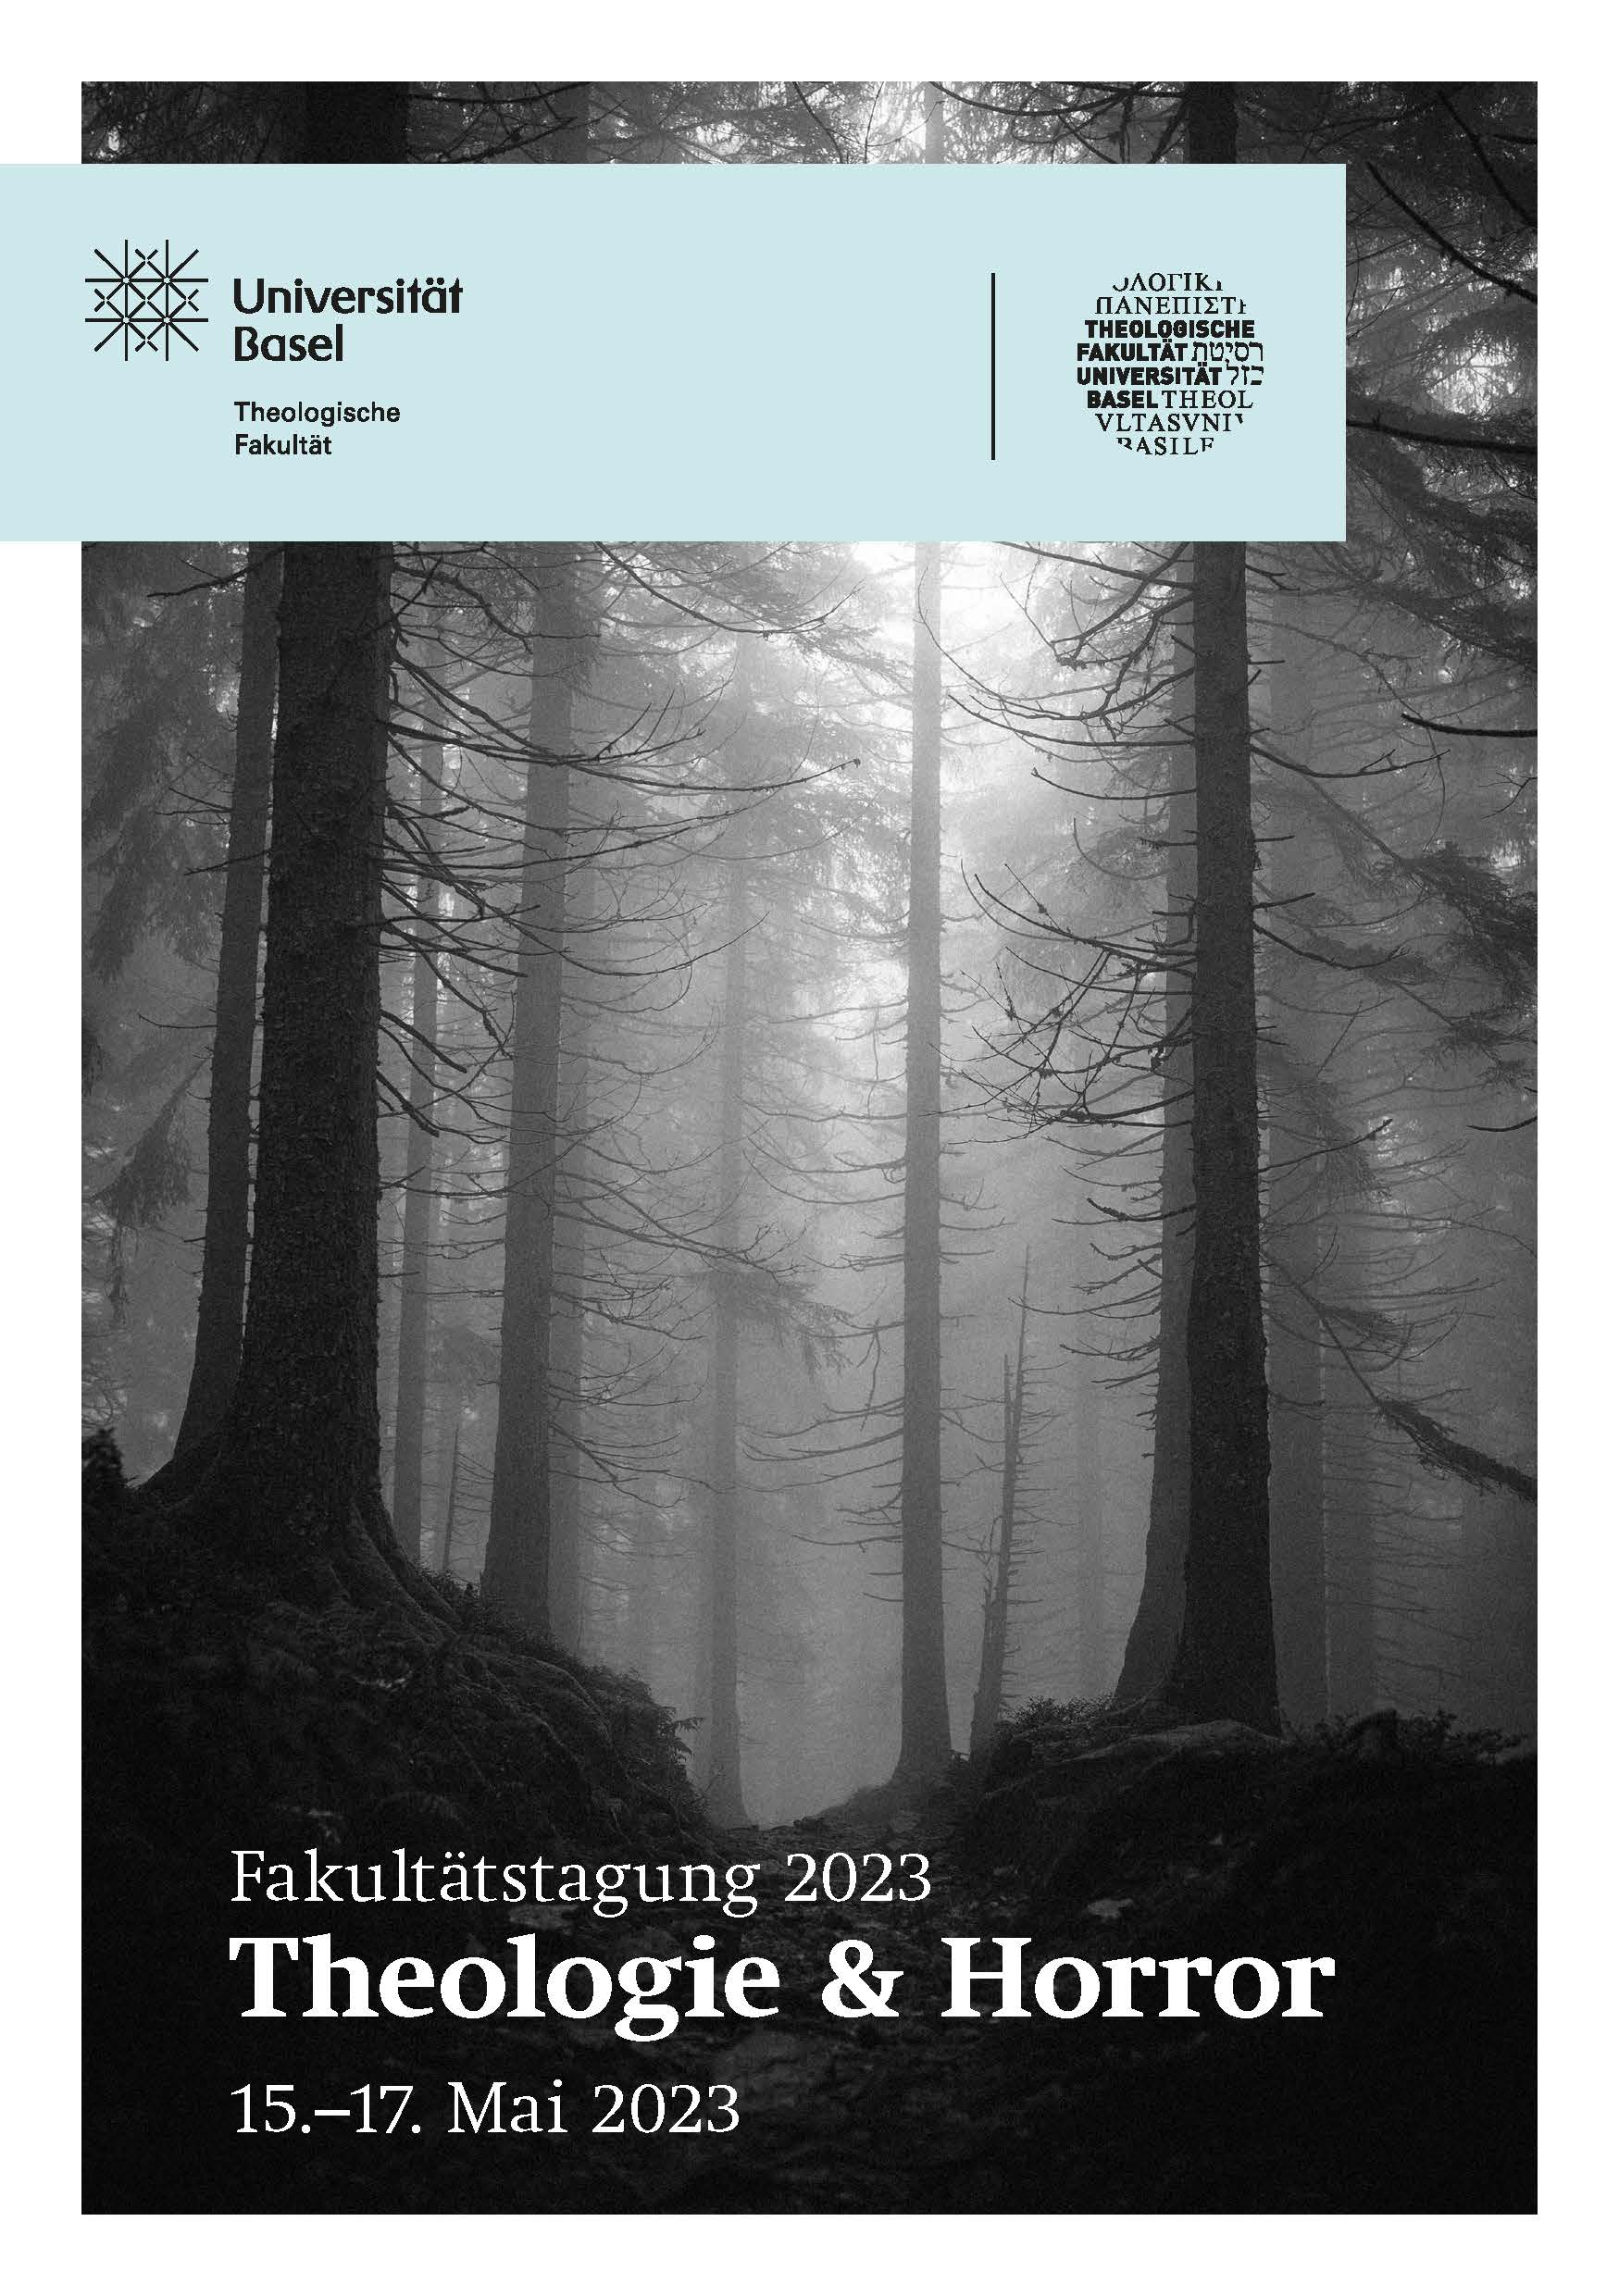 Titelfoto Fakultätstagung 2023: Schwarz-Weiss-Foto eines dunklen Waldes, in den von oben durch einige lichte Baumkronen etwas Licht dringt.